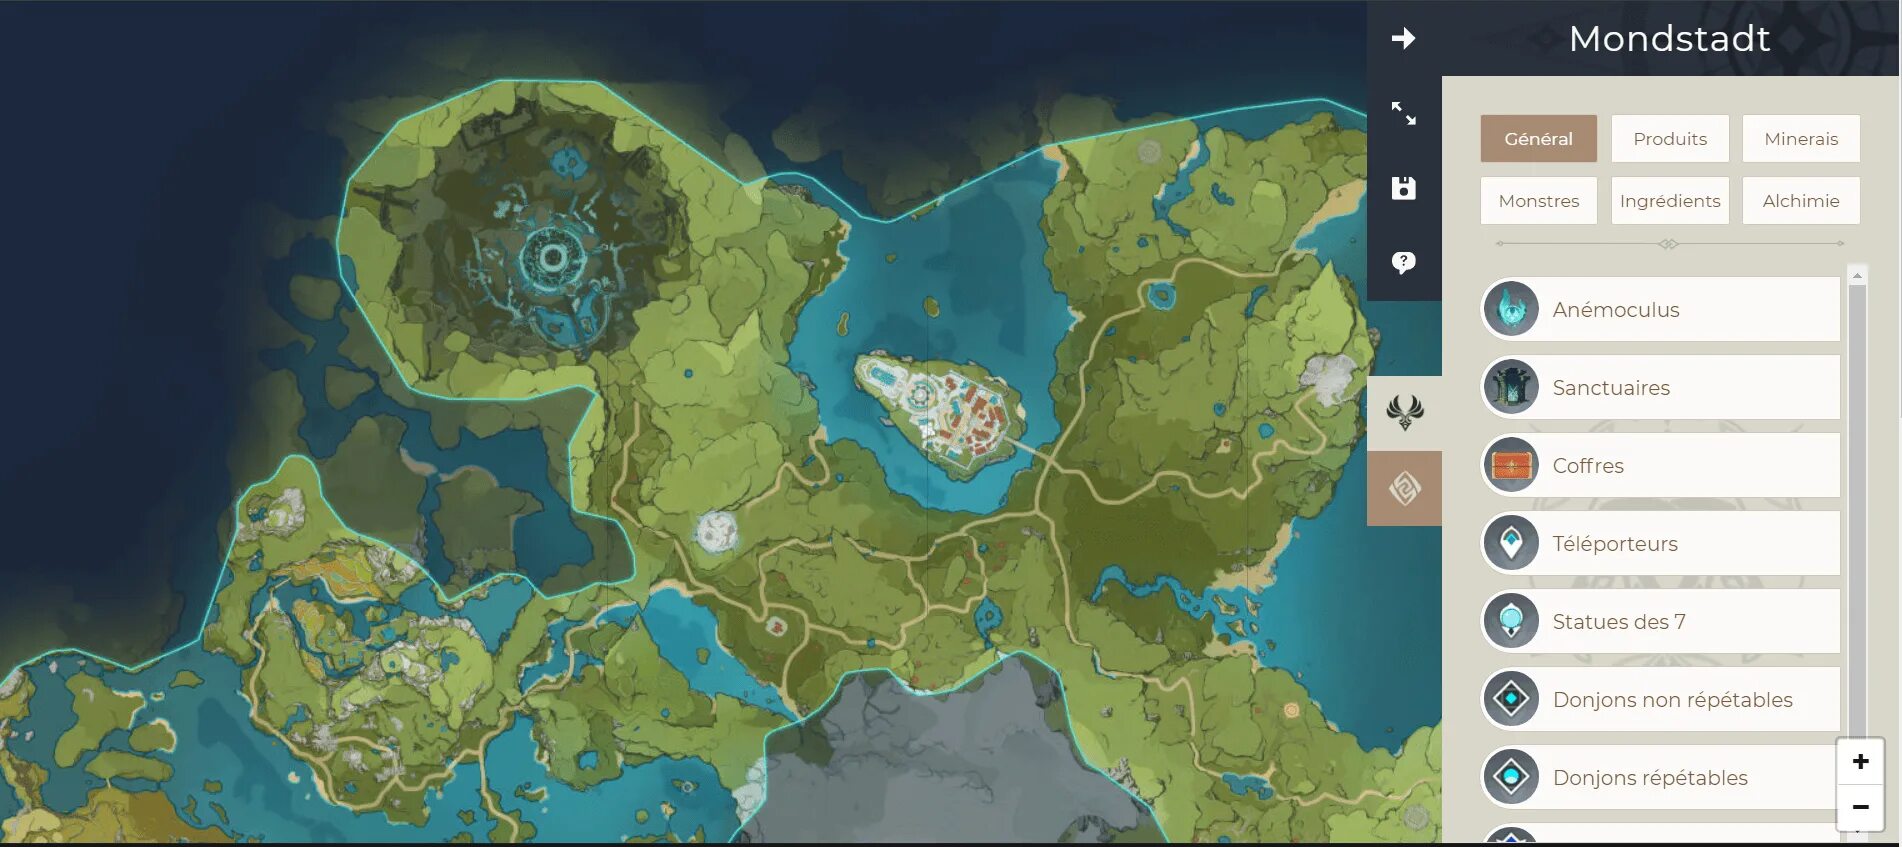 Интерактивная карта геншин импакт 4.6. Интерактивная карта Геншин Импакт 2.5. Интерактивная карта Геншин Импакт 2'7. Интерактивная карта тейвата Genshin Impact. Геншин Импакт карта Инадзумы.